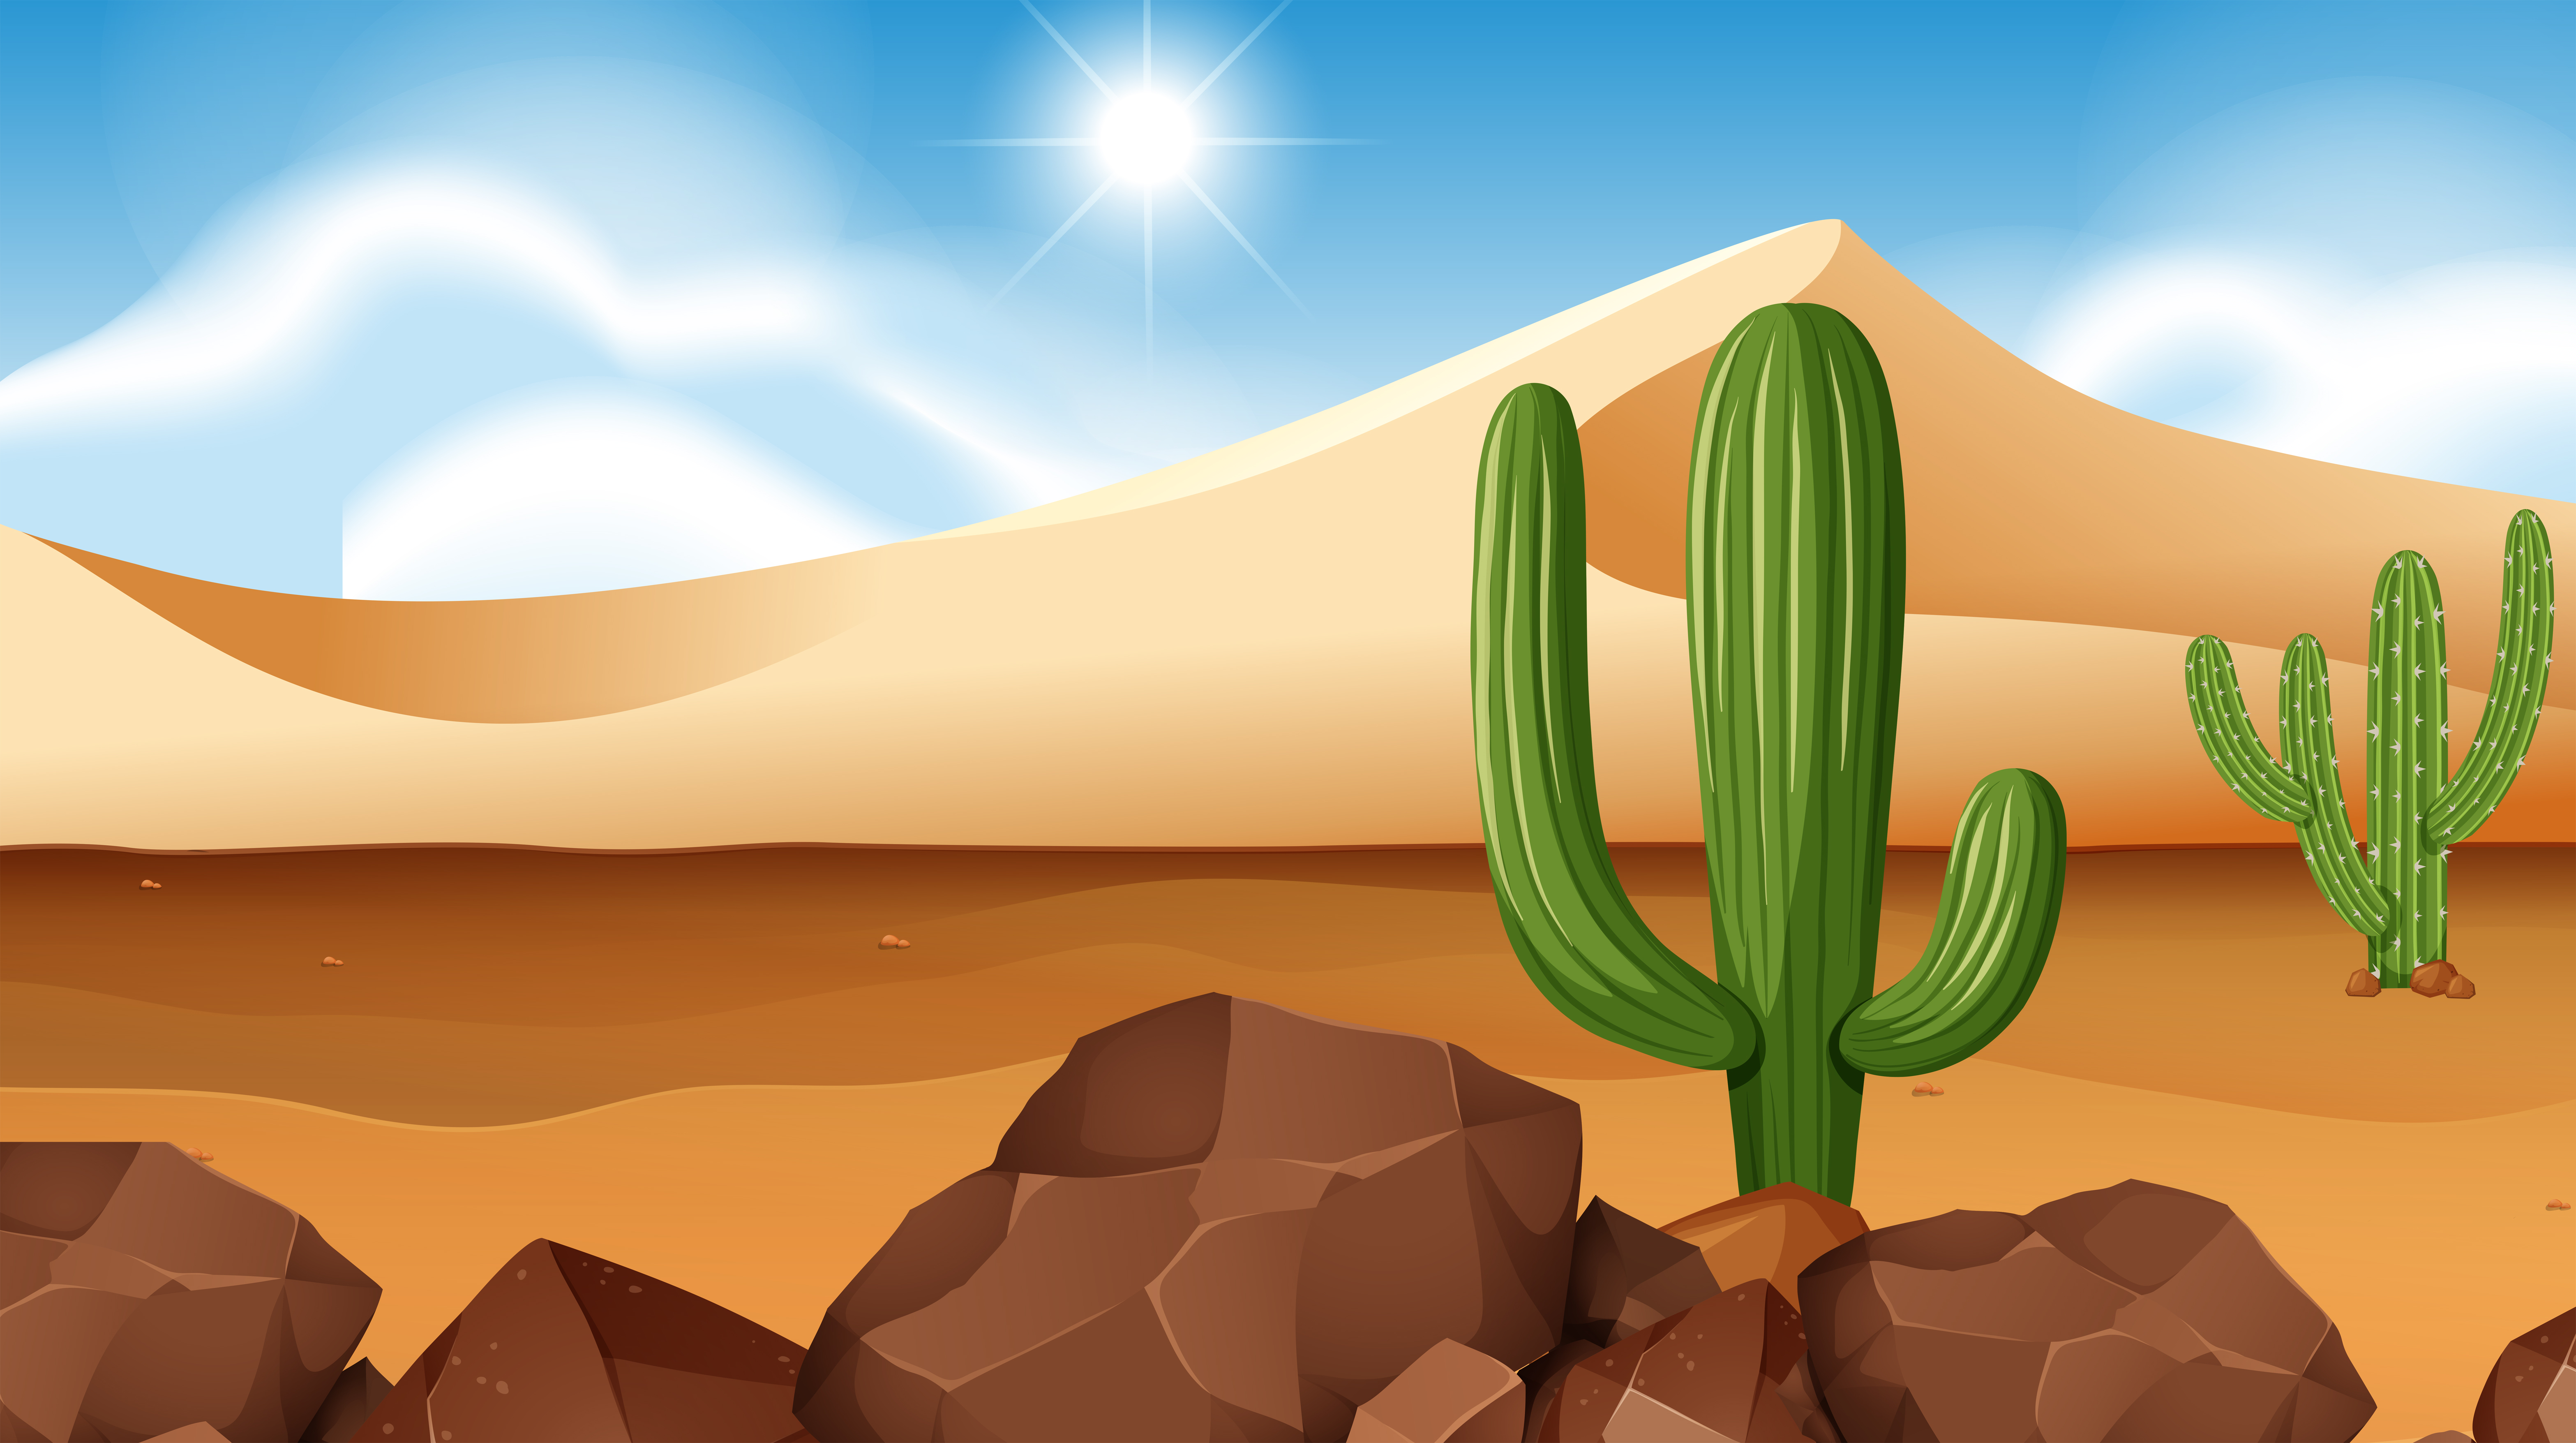 Desert scene with cactus 295619 Vector Art at Vecteezy